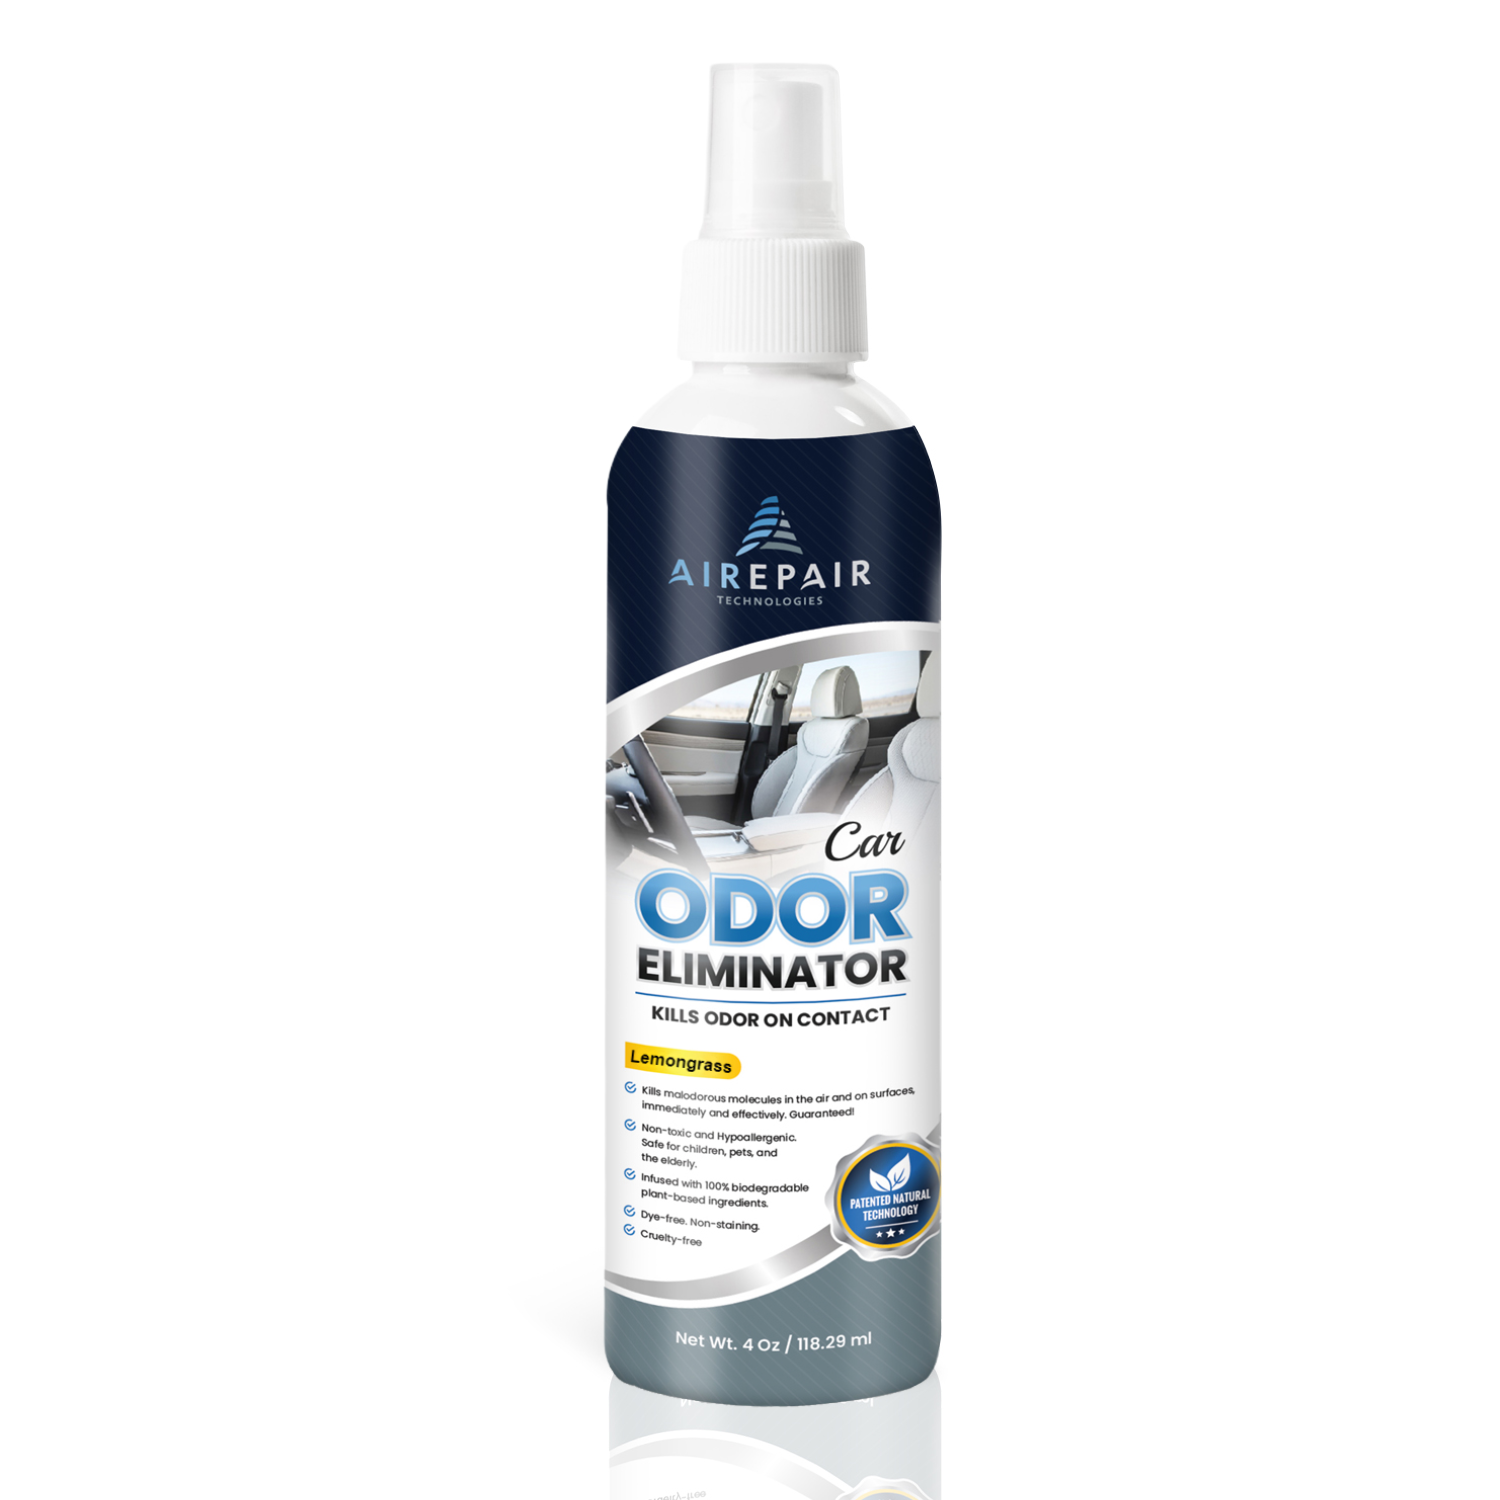 Airepair Car Odor Eliminator, Deodorizer, and Air Freshener